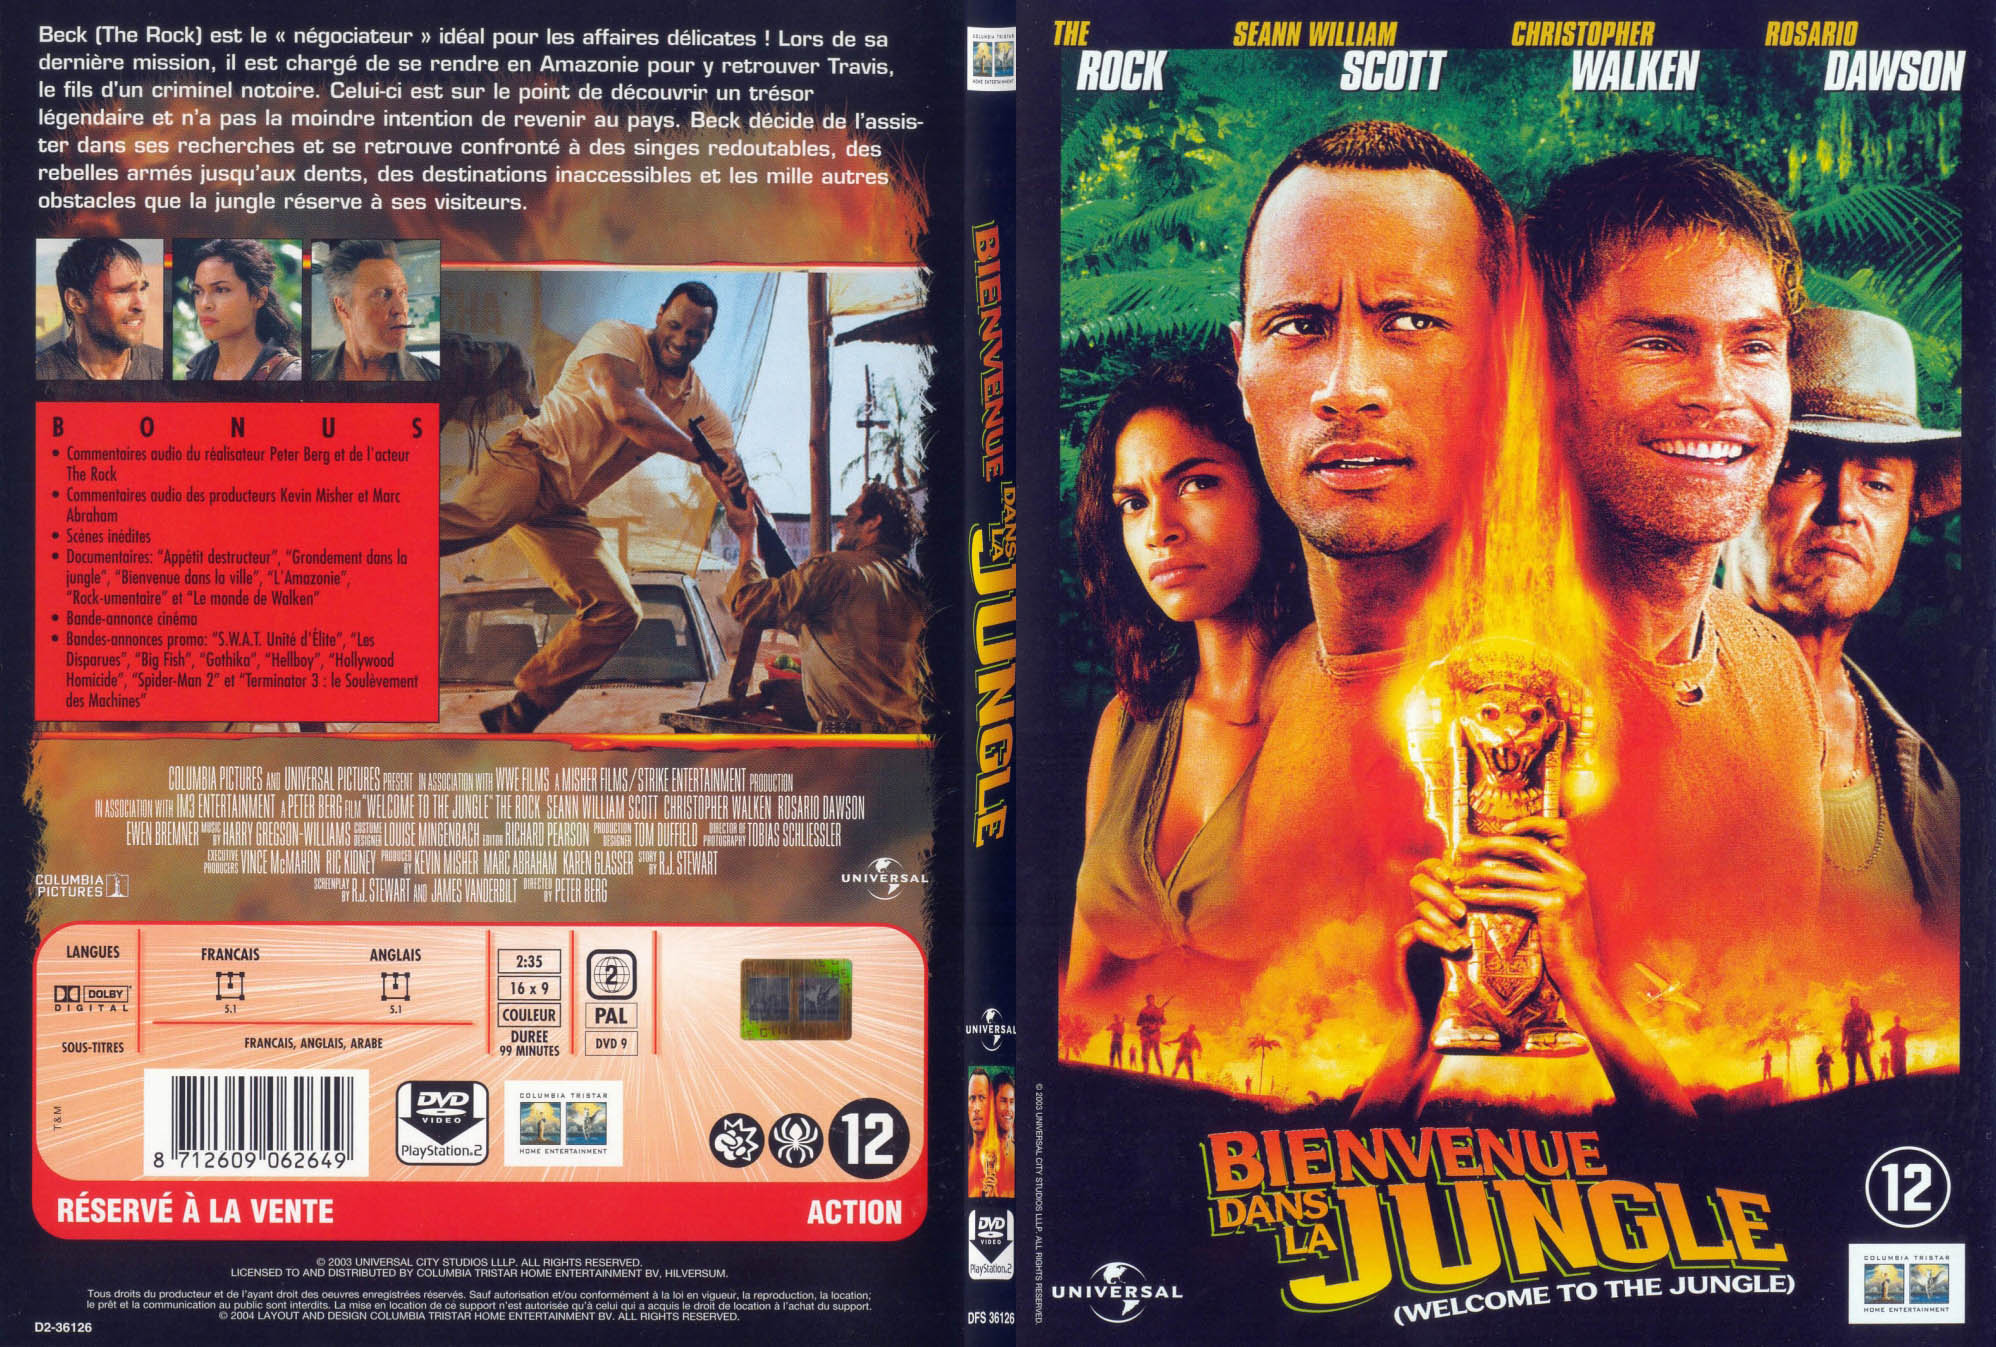 Jaquette DVD Bienvenue dans la jungle - SLIM